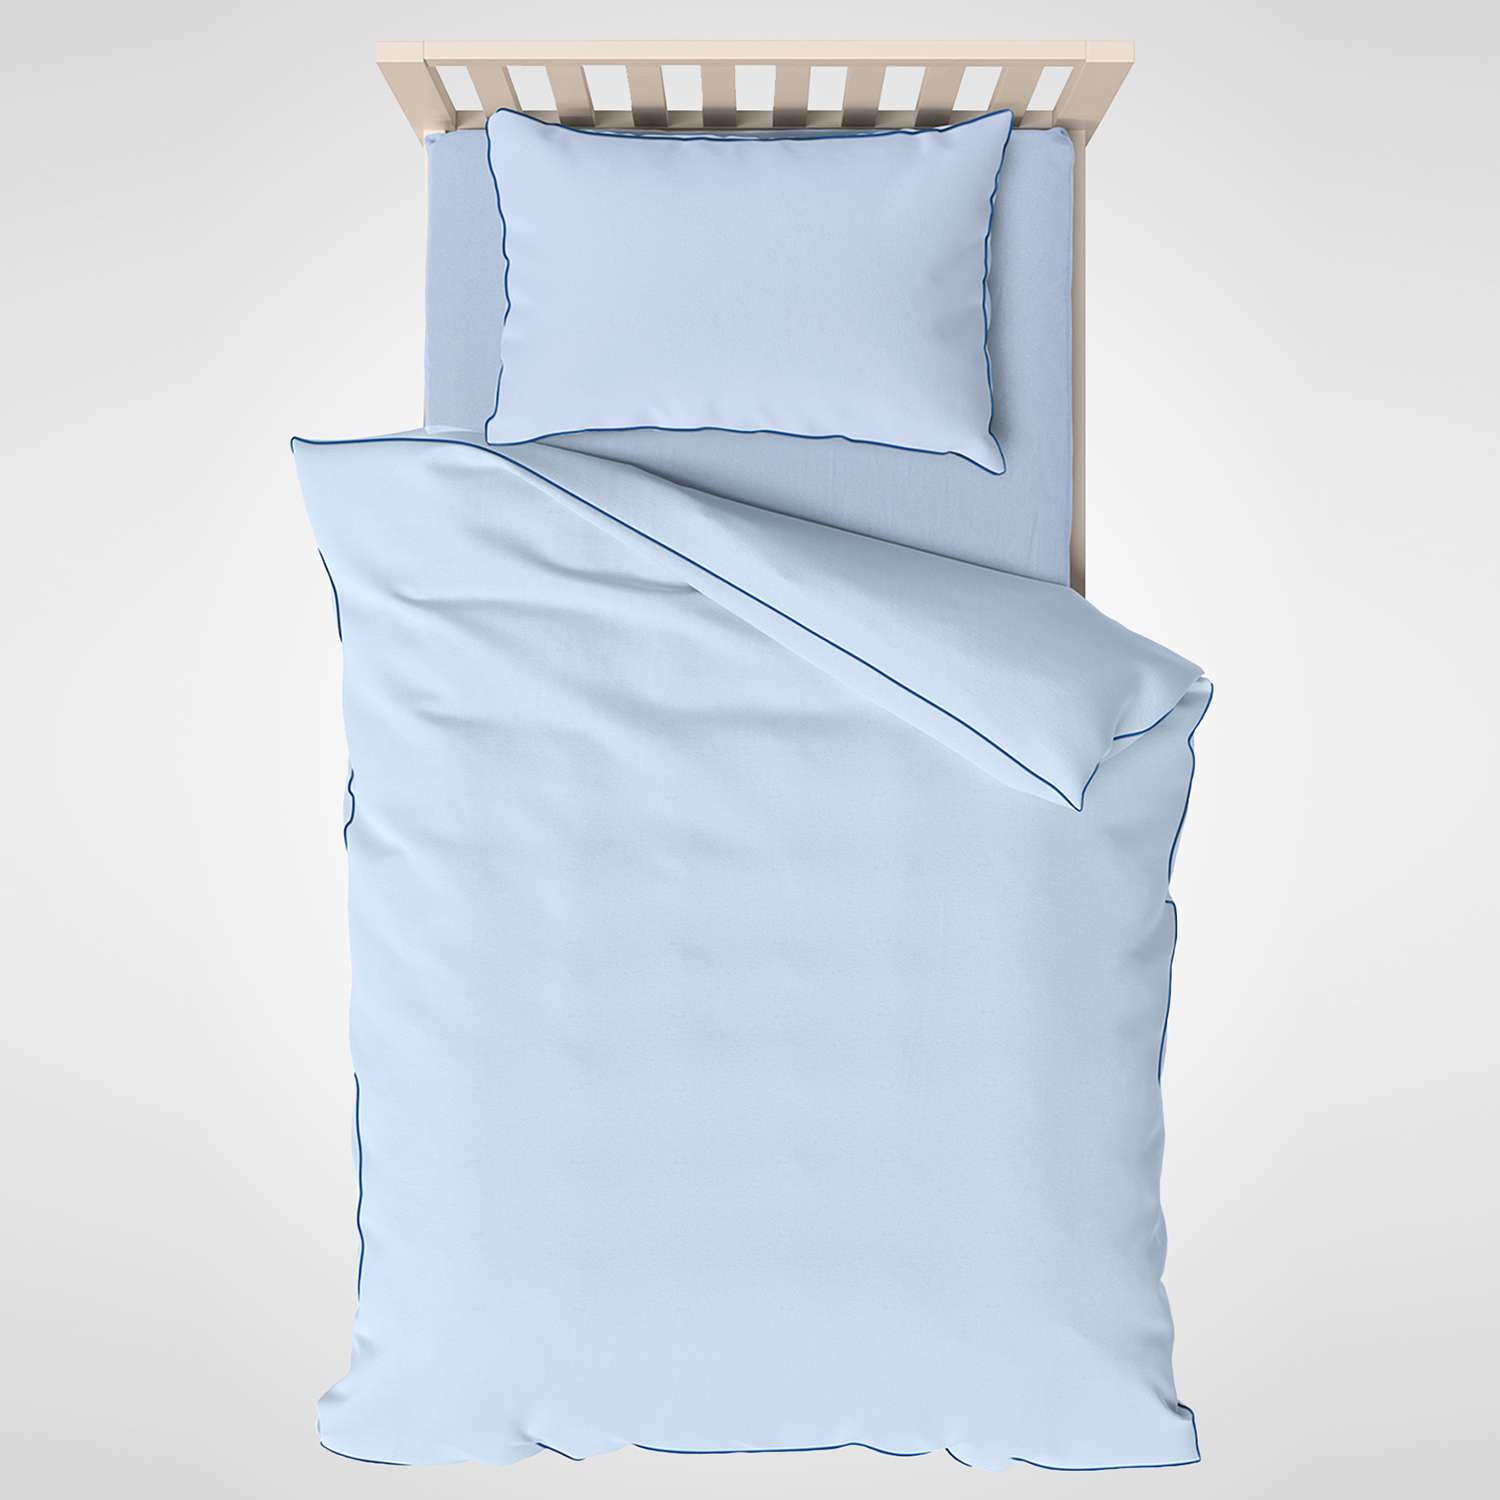 Комплект постельного белья SONNO СОНЯ Хлопок 100% цвет Голубая дымка - фото 1